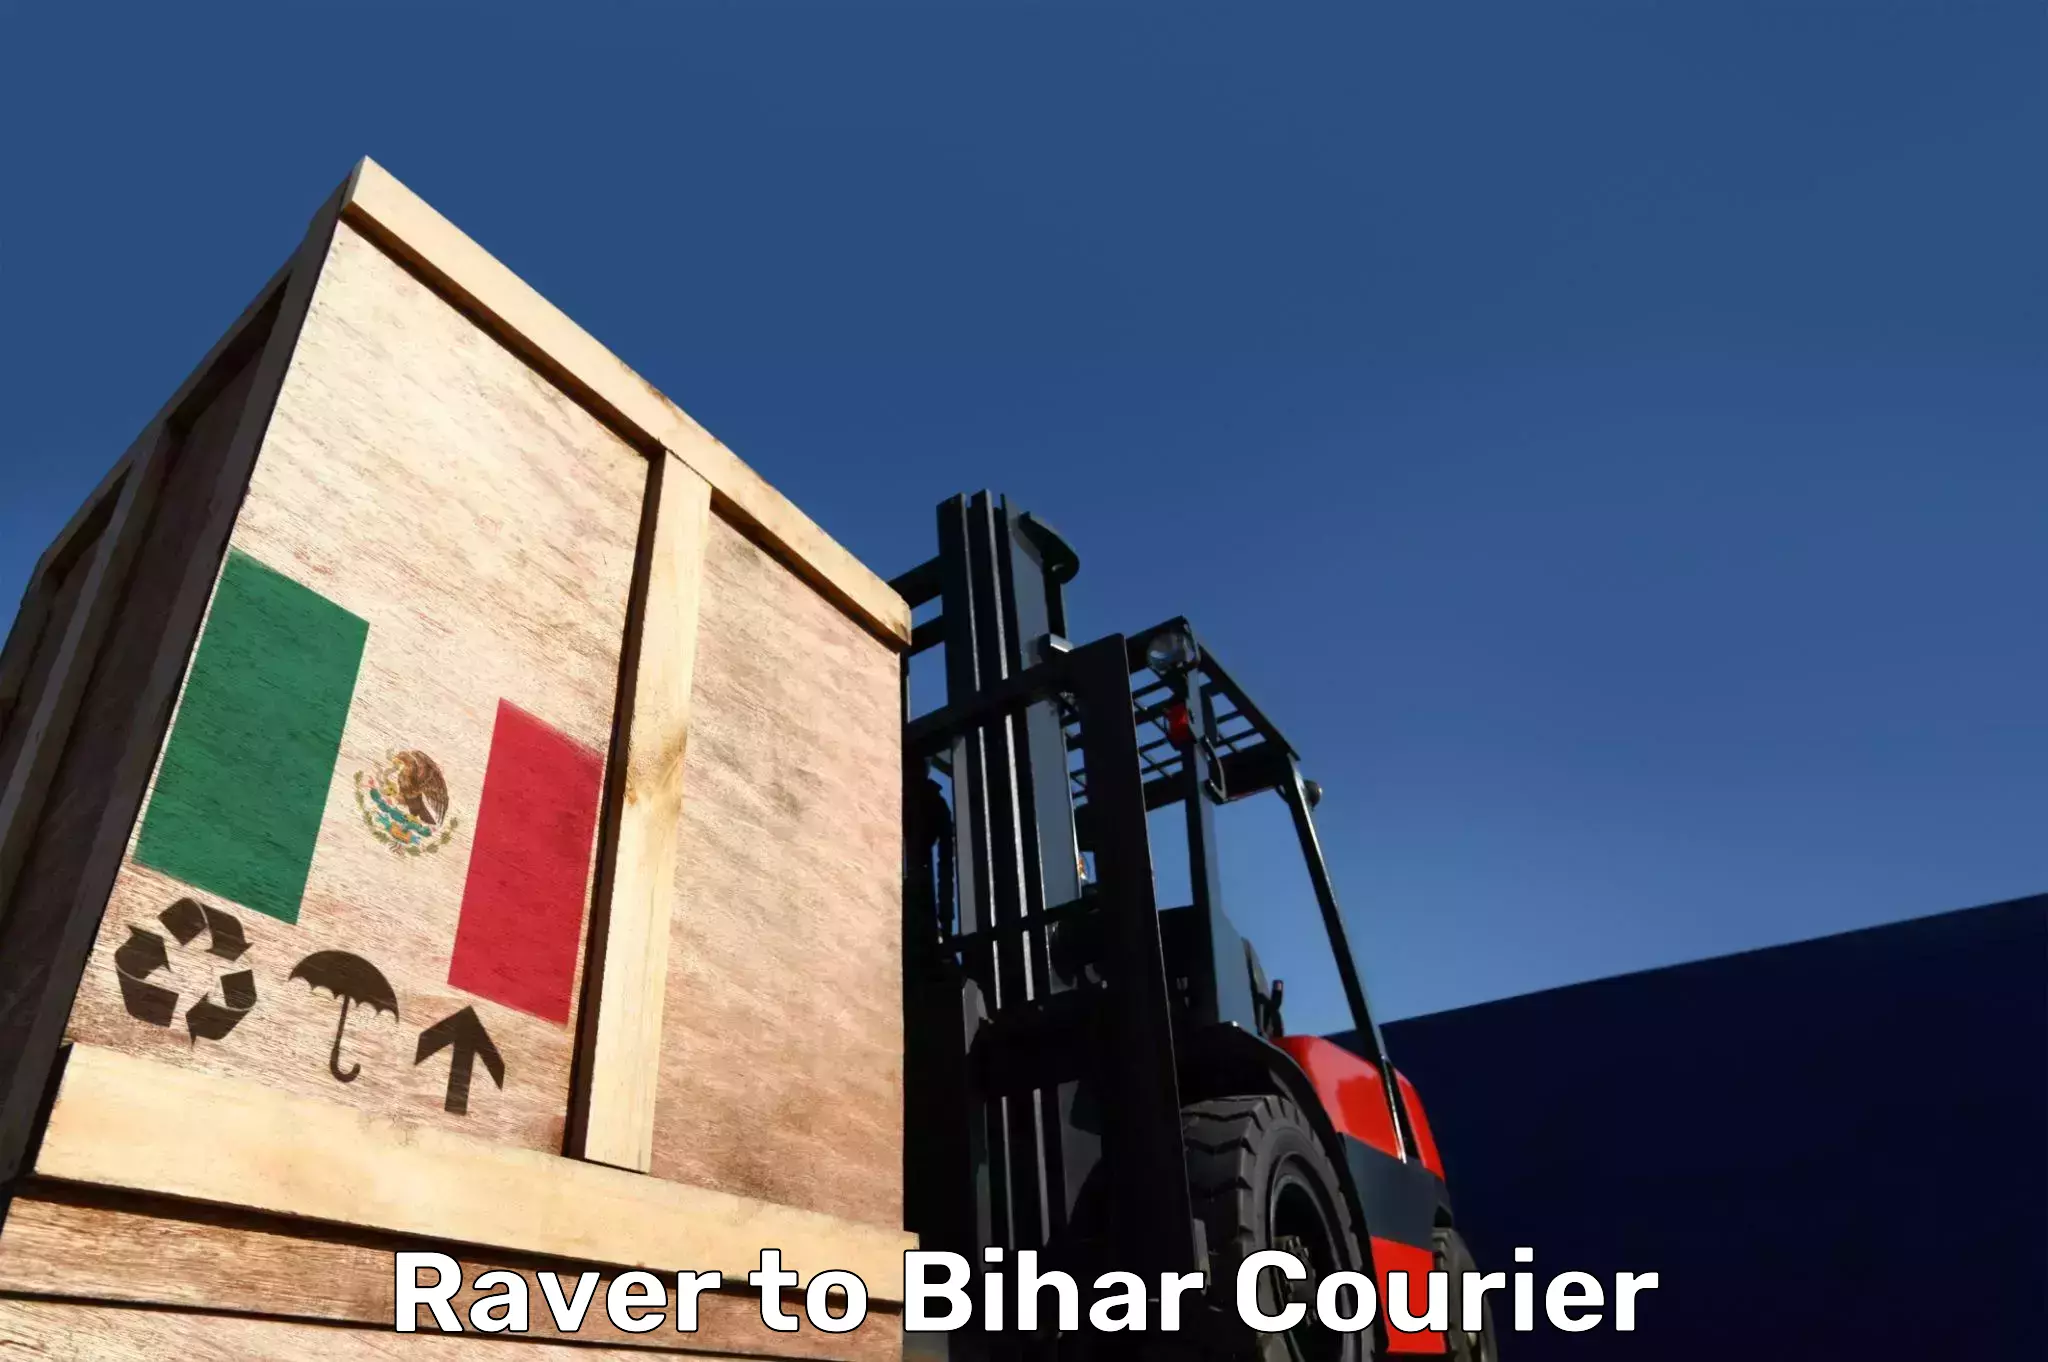 Baggage transport network Raver to Bharwara